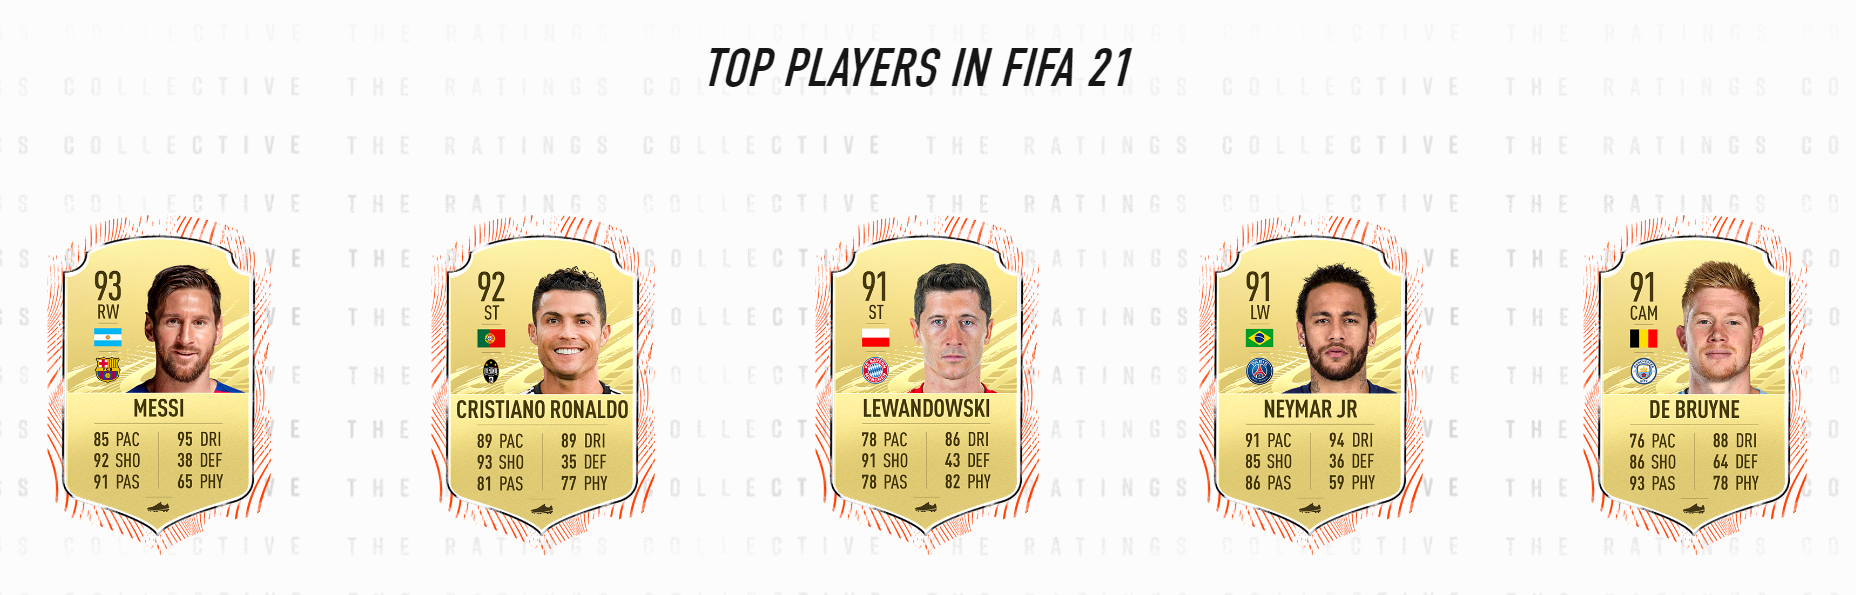 Najboljših 5 igralcev v FIFA 21